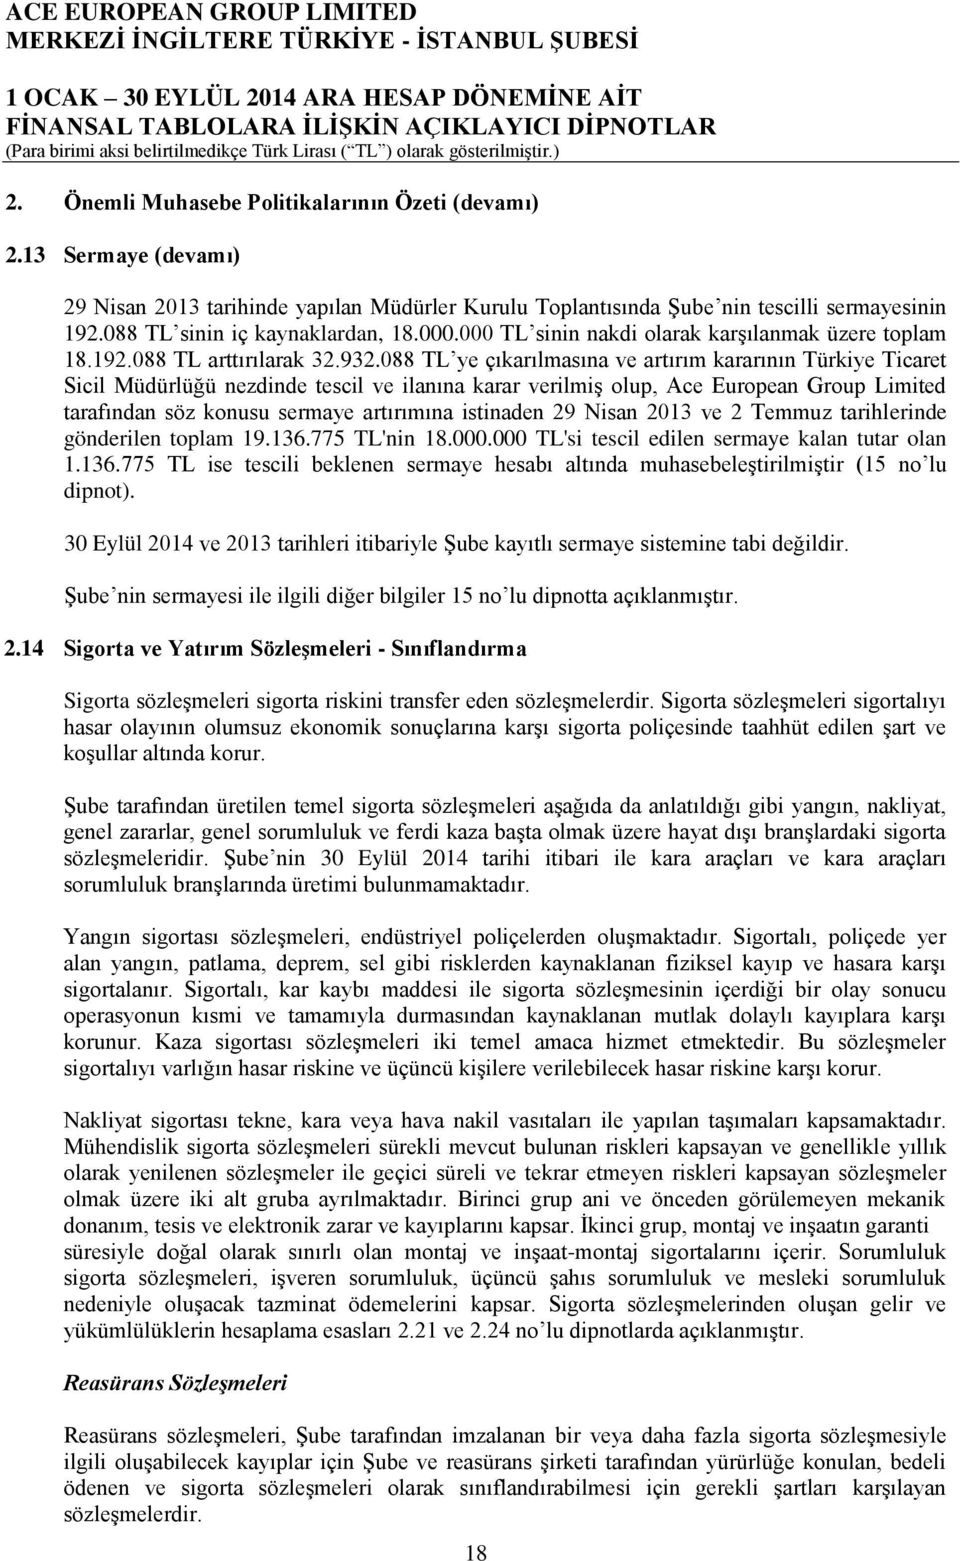 088 TL ye çıkarılmasına ve artırım kararının Türkiye Ticaret Sicil Müdürlüğü nezdinde tescil ve ilanına karar verilmiş olup, Ace European Group Limited tarafından söz konusu sermaye artırımına